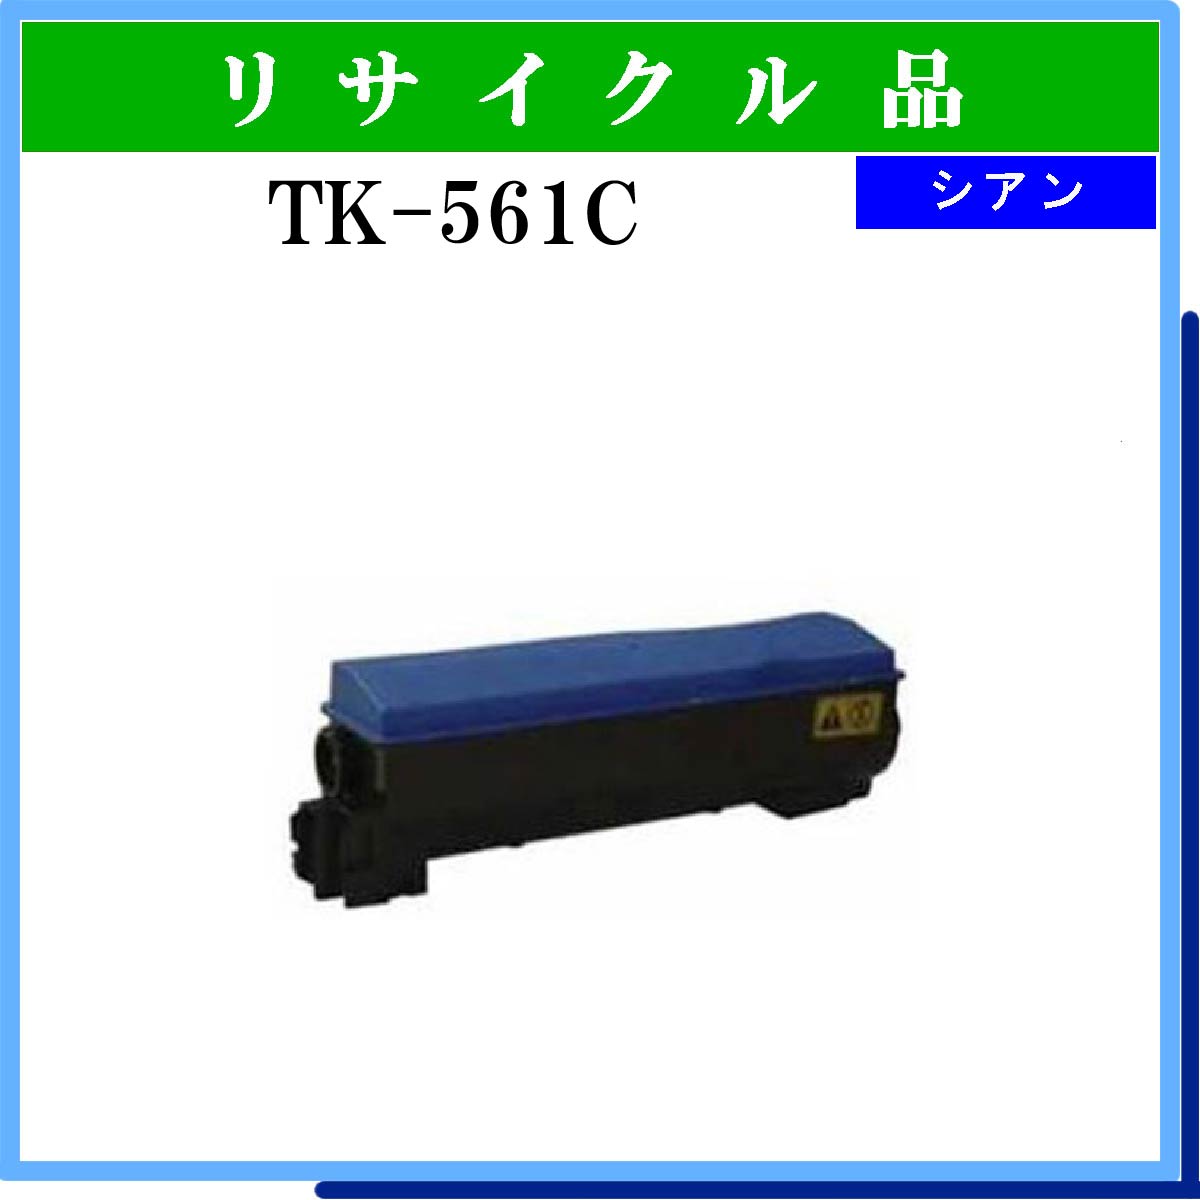 TK-561C